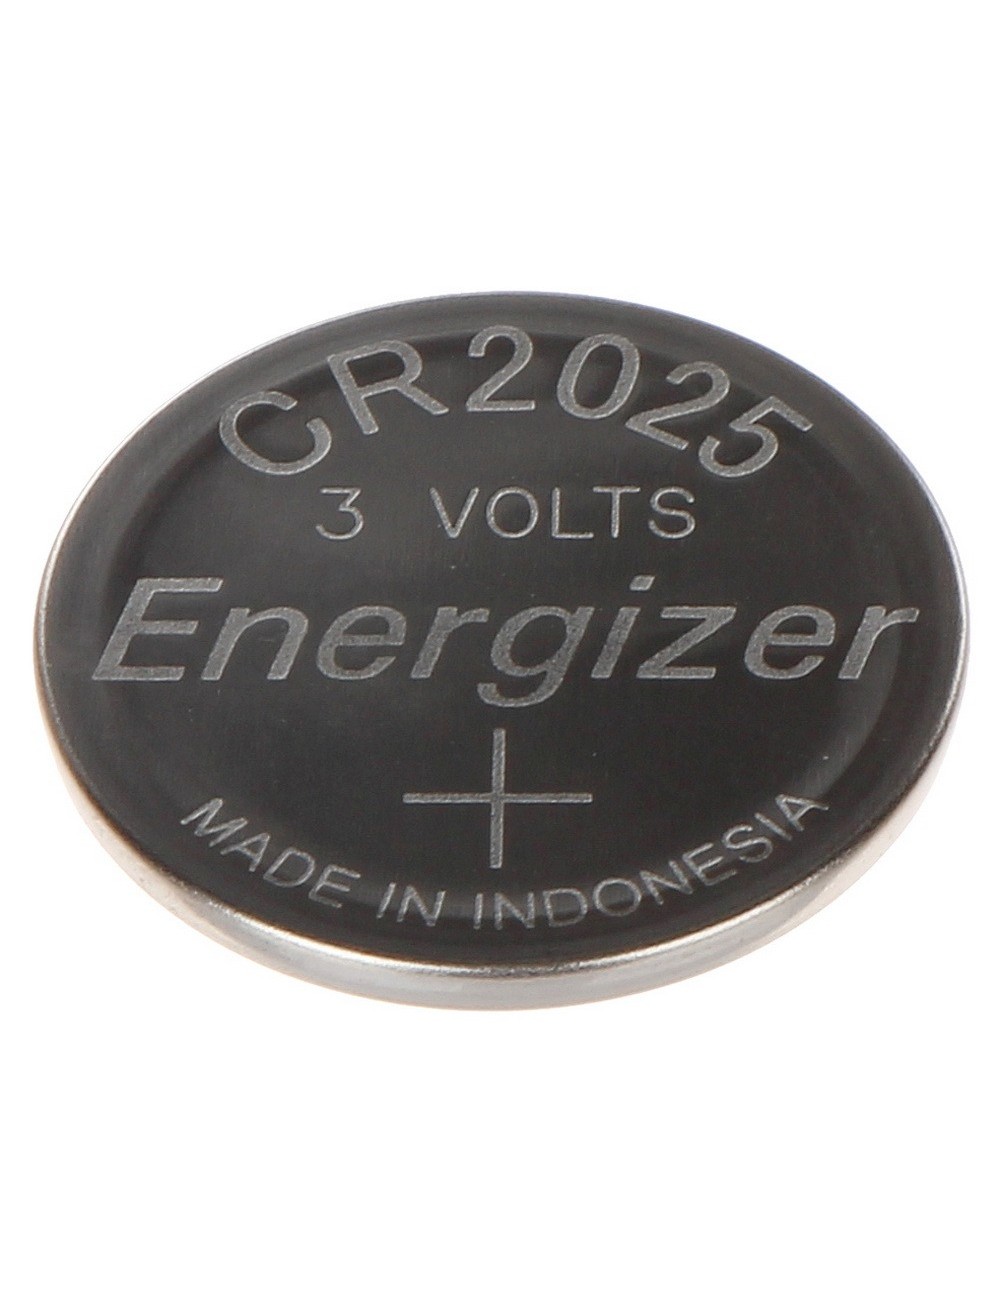 Energizer pile bouton, CR2025, blister 2 pièces